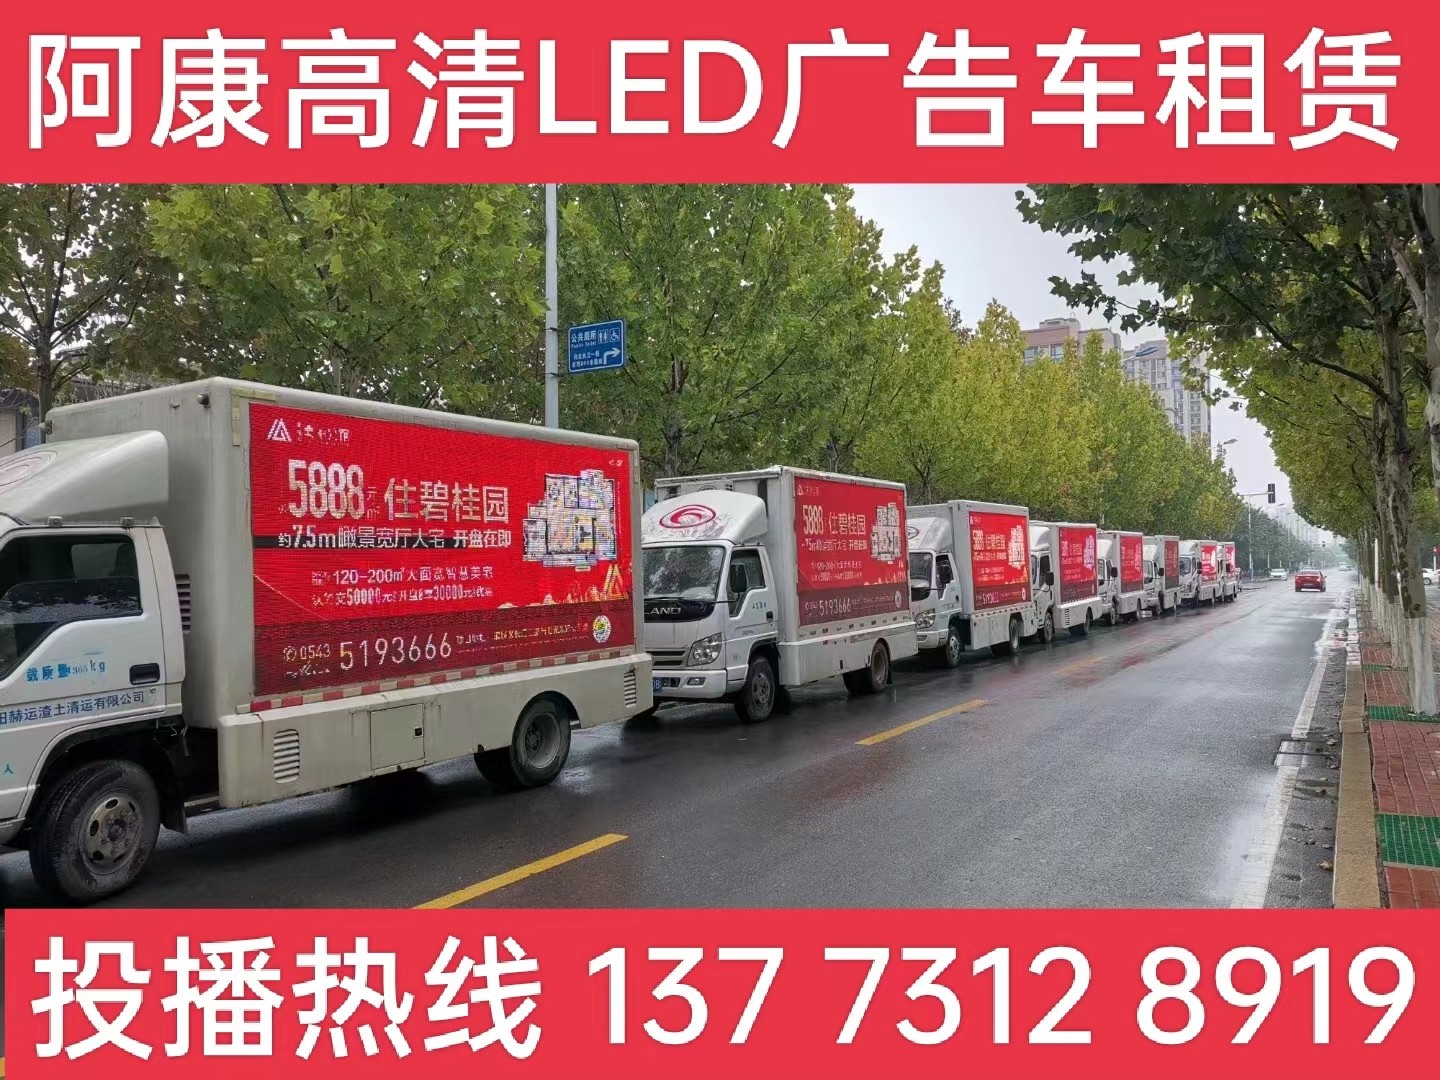 海宁宣传车租赁公司-楼盘LED广告车投放